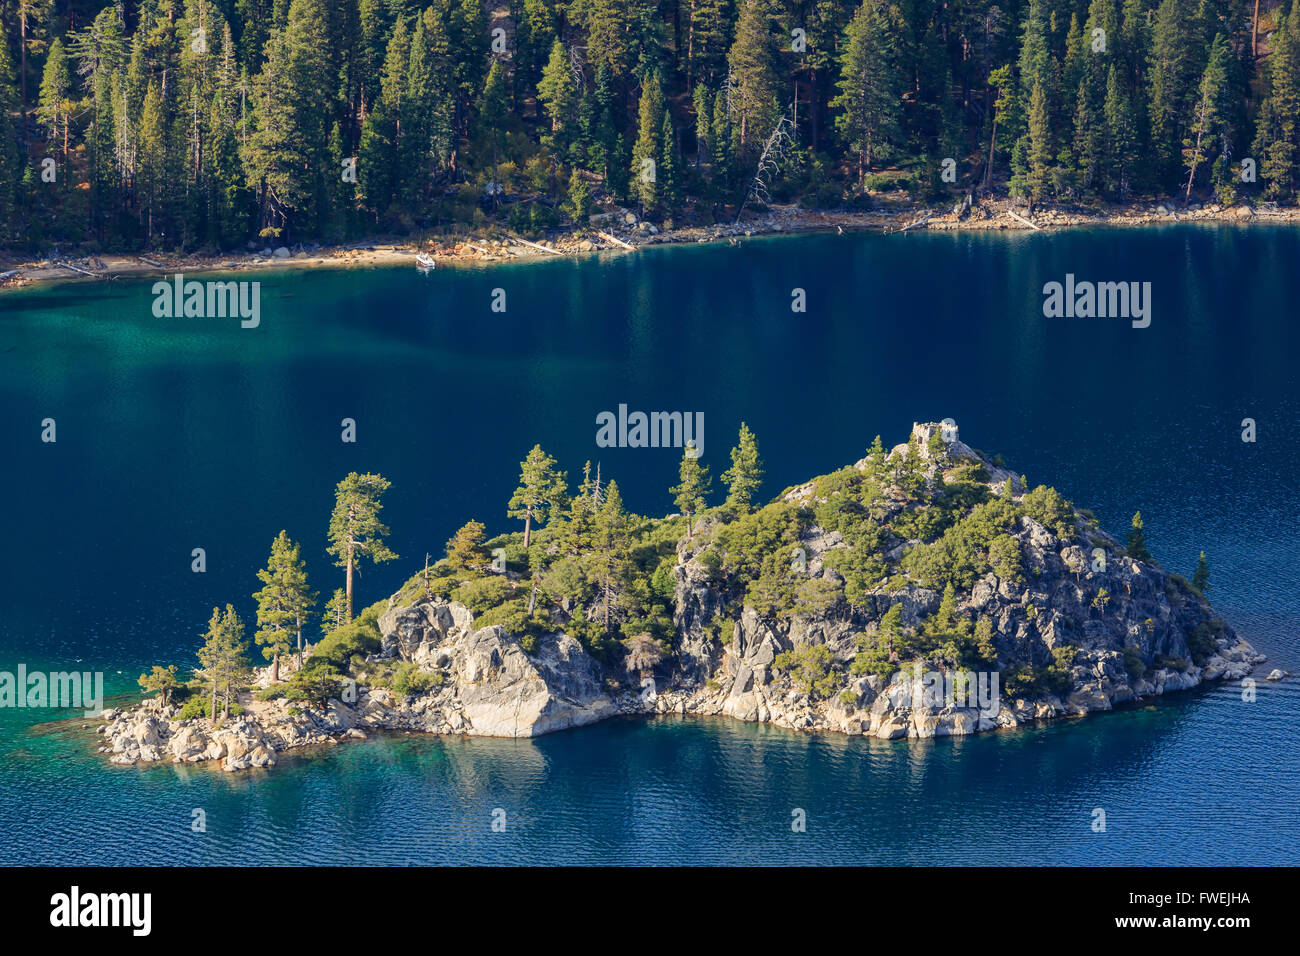 Fannette island, Photos Taken in Lake Tahoe Area Stock Photo